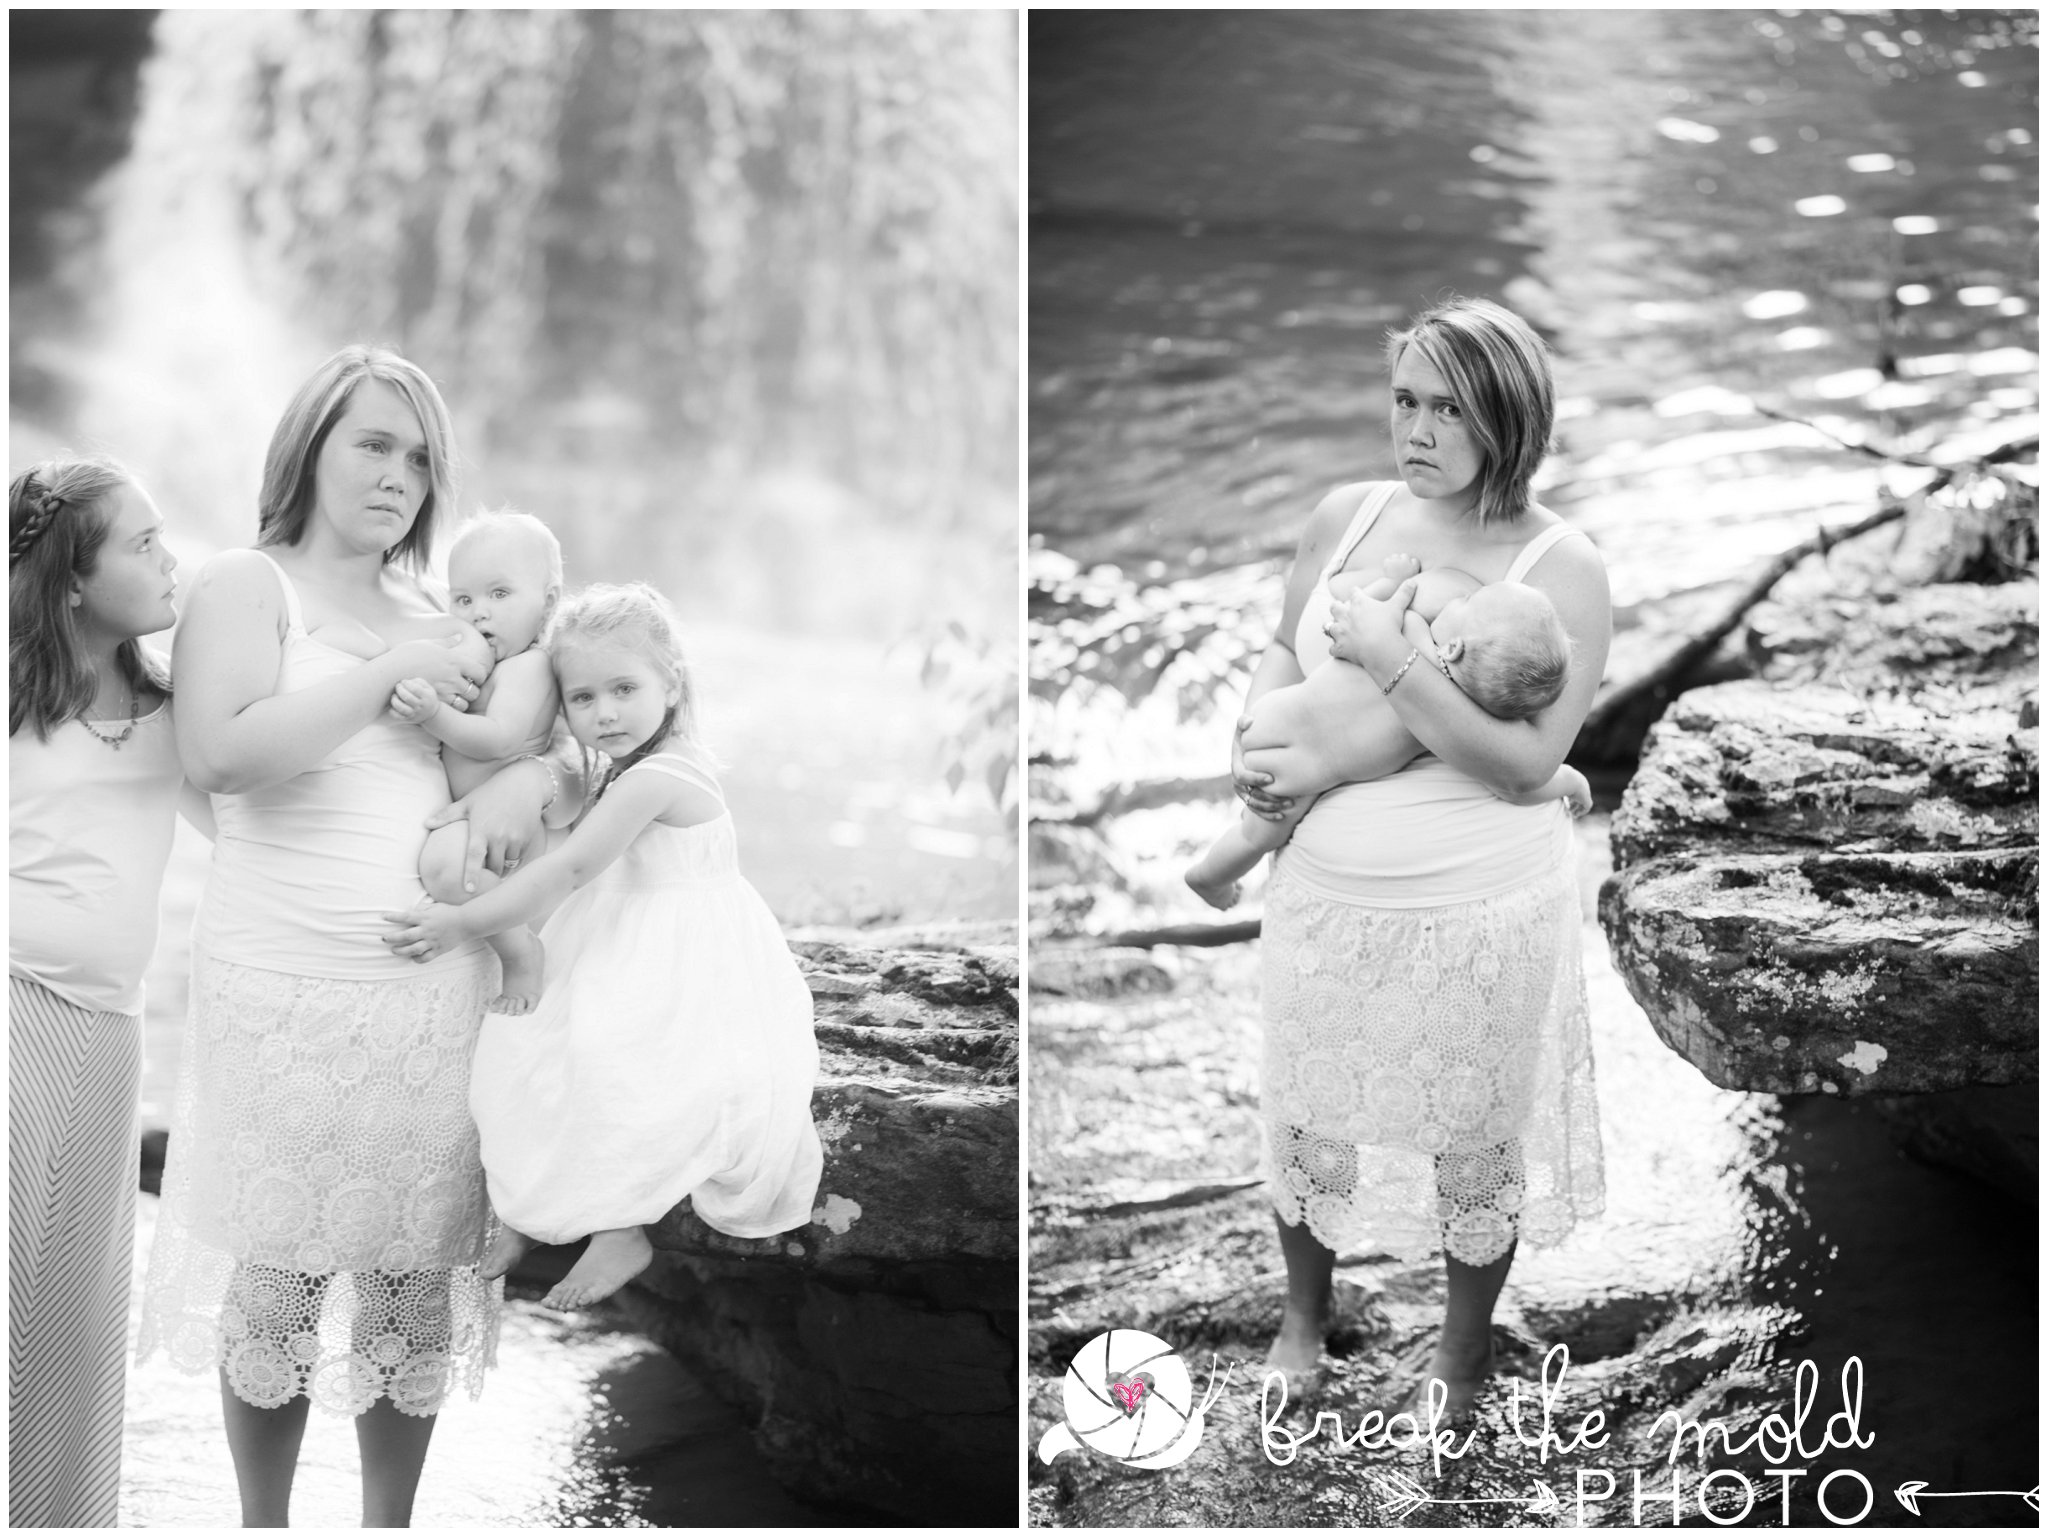 break-the-mold-photo-nursing-mothers-waterfall-women-celebrate-beauty_5412.jpg